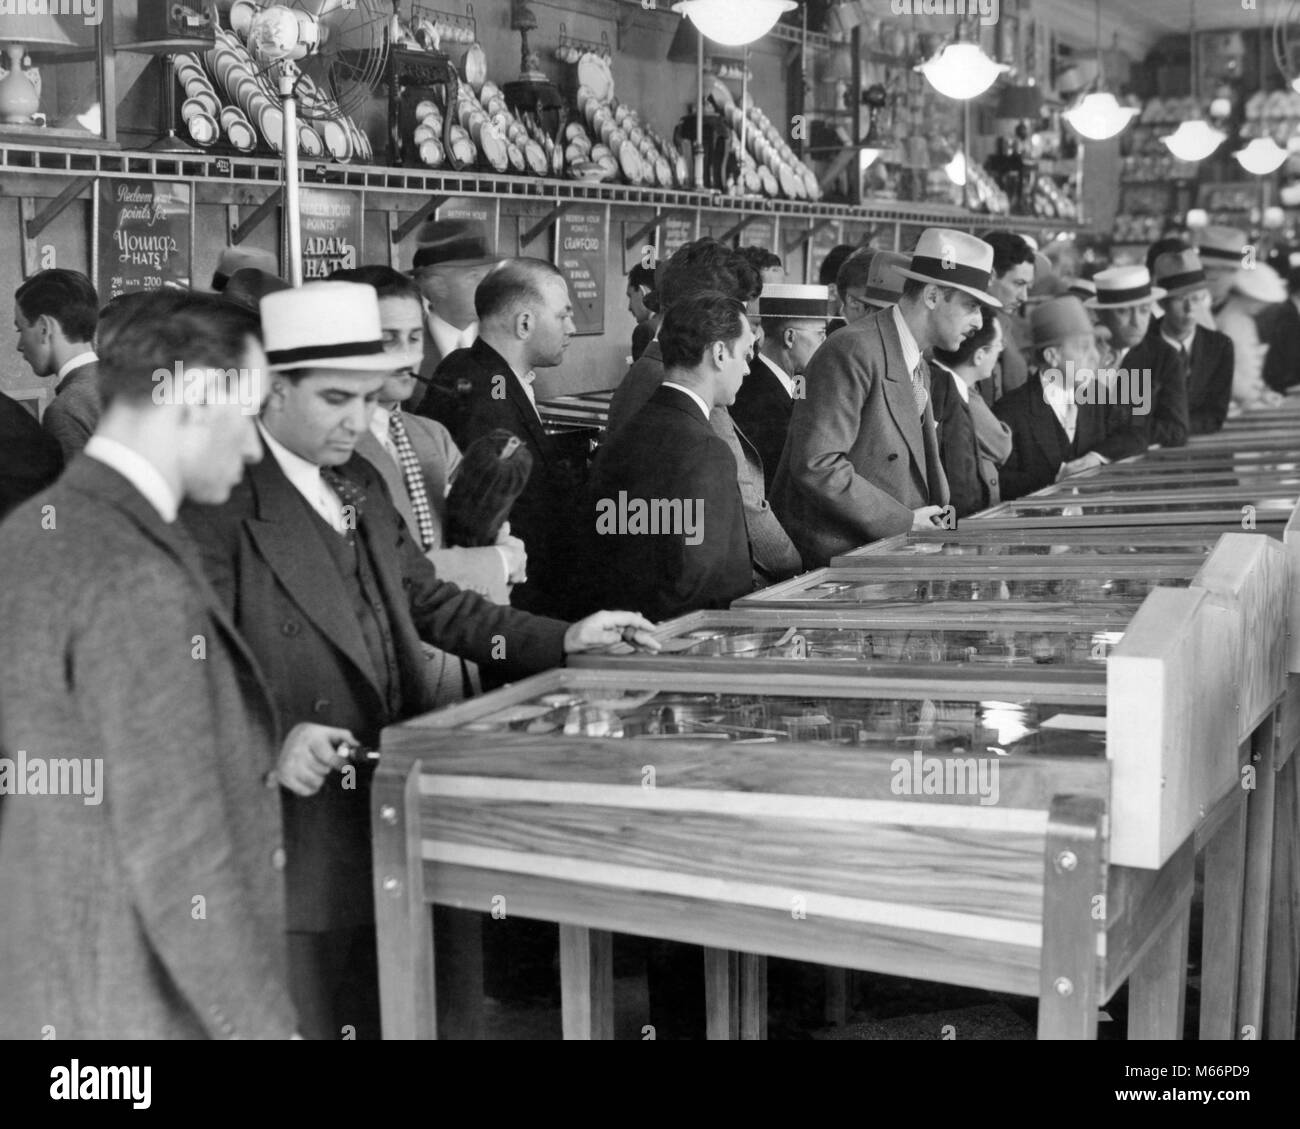 Groupe 1930 hommes portant des chapeaux en jouant les billards électriques dans la salle de Broadway, Times Square NEW YORK CITY USA - q74791 CPC001 HARS MIDTOWN EN ARCADE GOTHAM MACHINES LOISIRS EXCITATION NYC NEW YORK VILLES GROUPE DE PERSONNES NEW YORK CITY TIMES SQUARE, BROADWAY MI-hommes mi-ADULTES ADULT MAN B&W BIG APPLE NOIR ET BLANC PORTRAIT DE L'ORIGINE ETHNIQUE DES PERSONNES À L'ANCIENNE JEUX PINBALL Banque D'Images